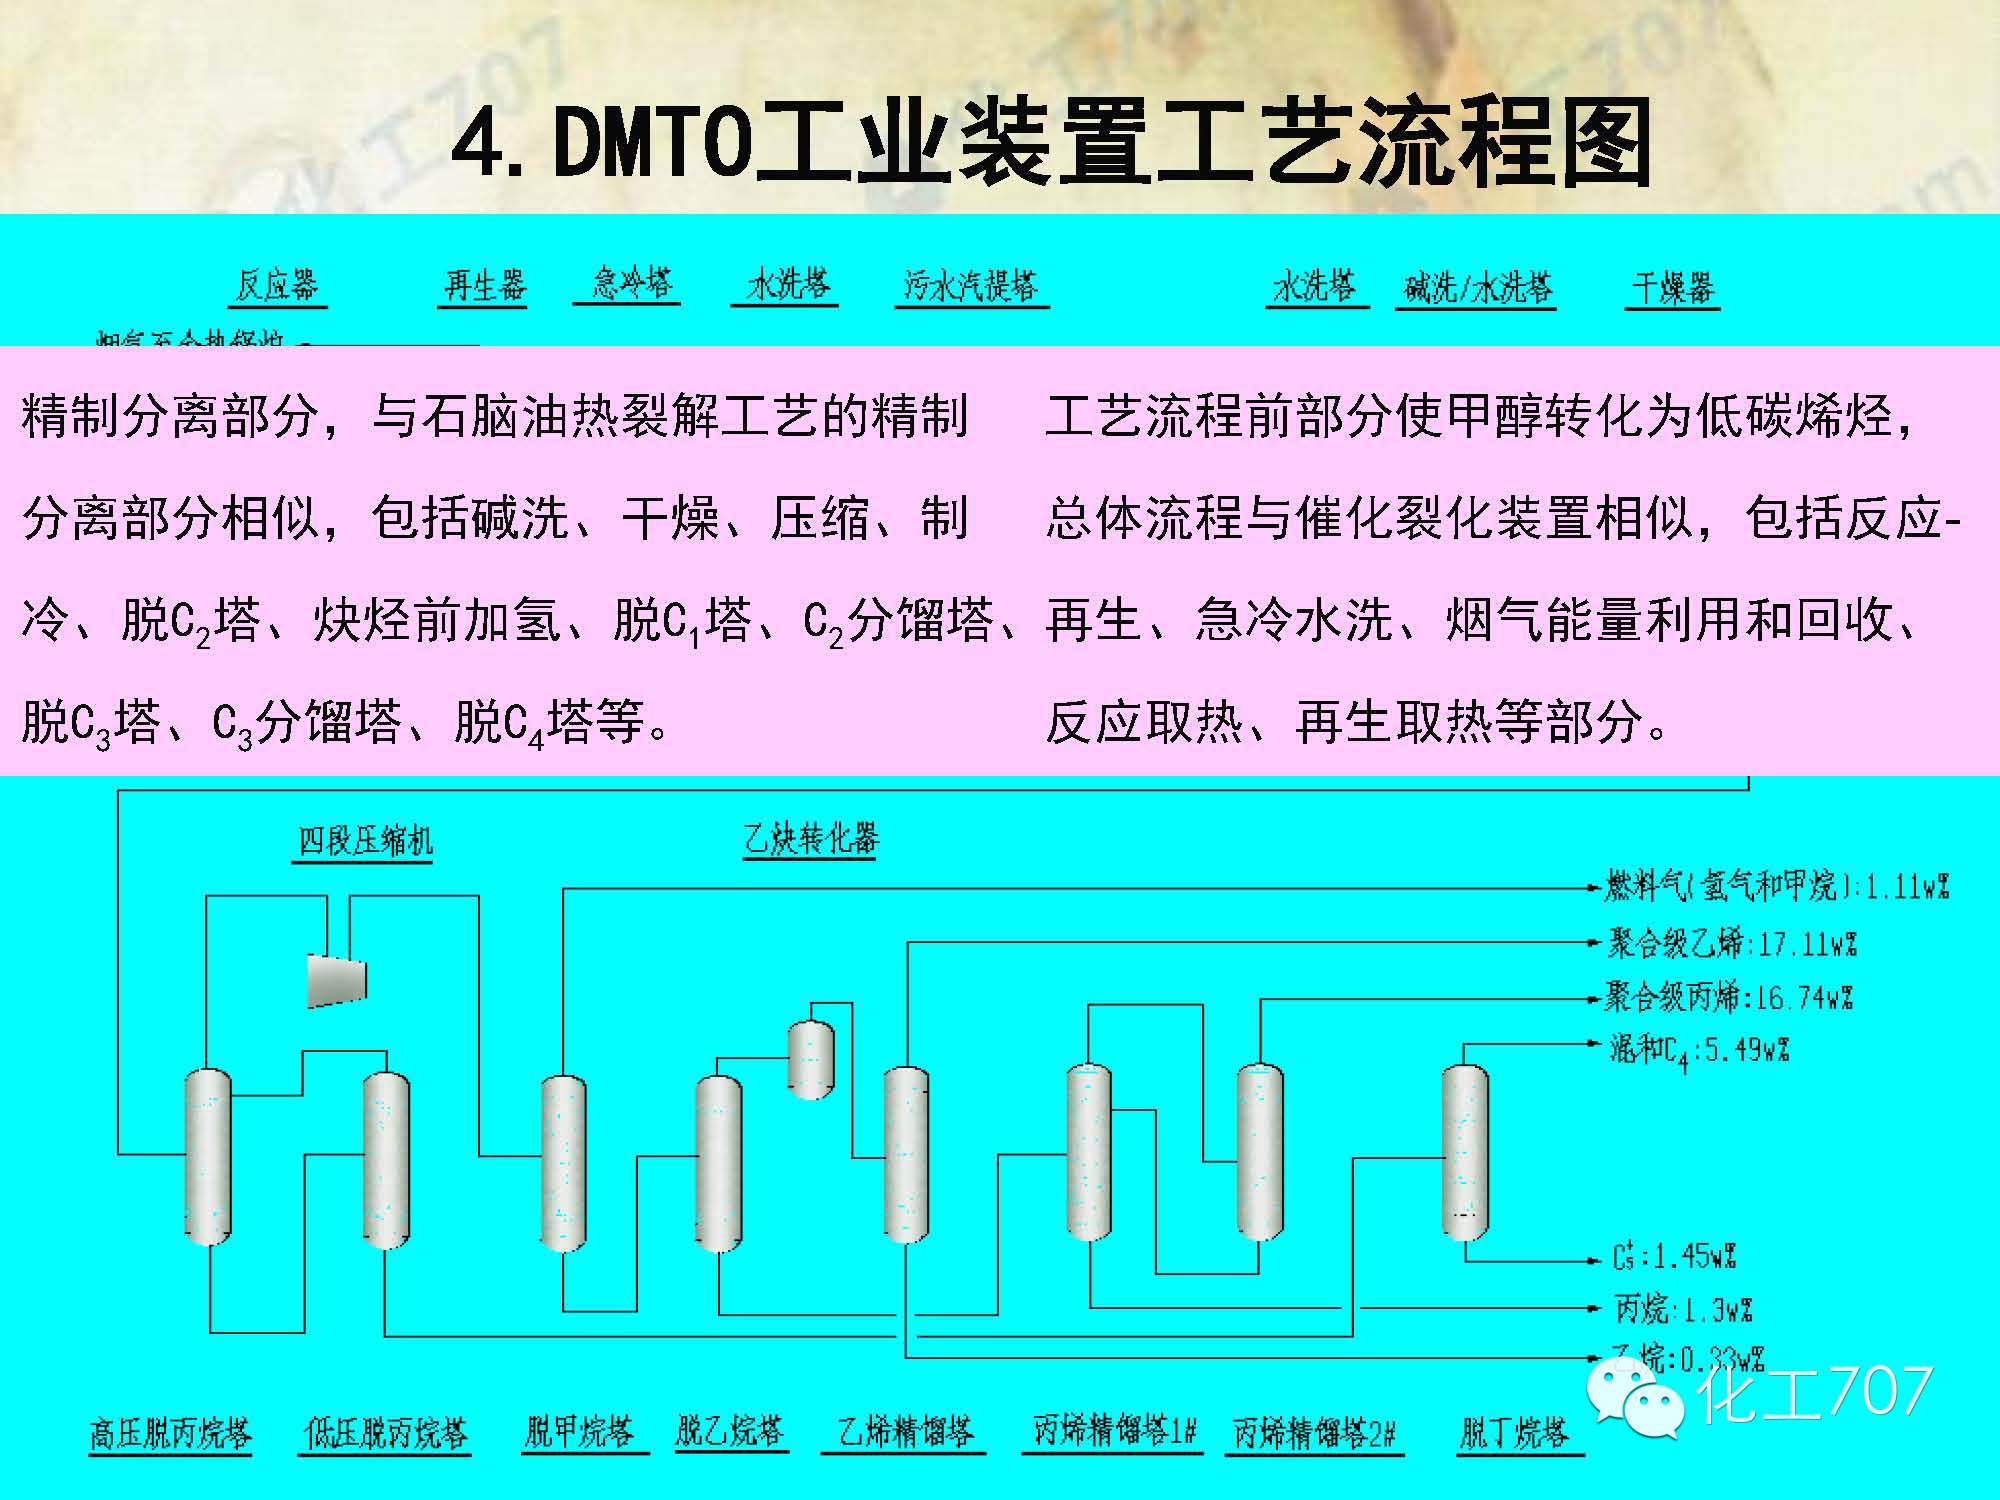 专业解读甲醇制烯烃技术(dmto)